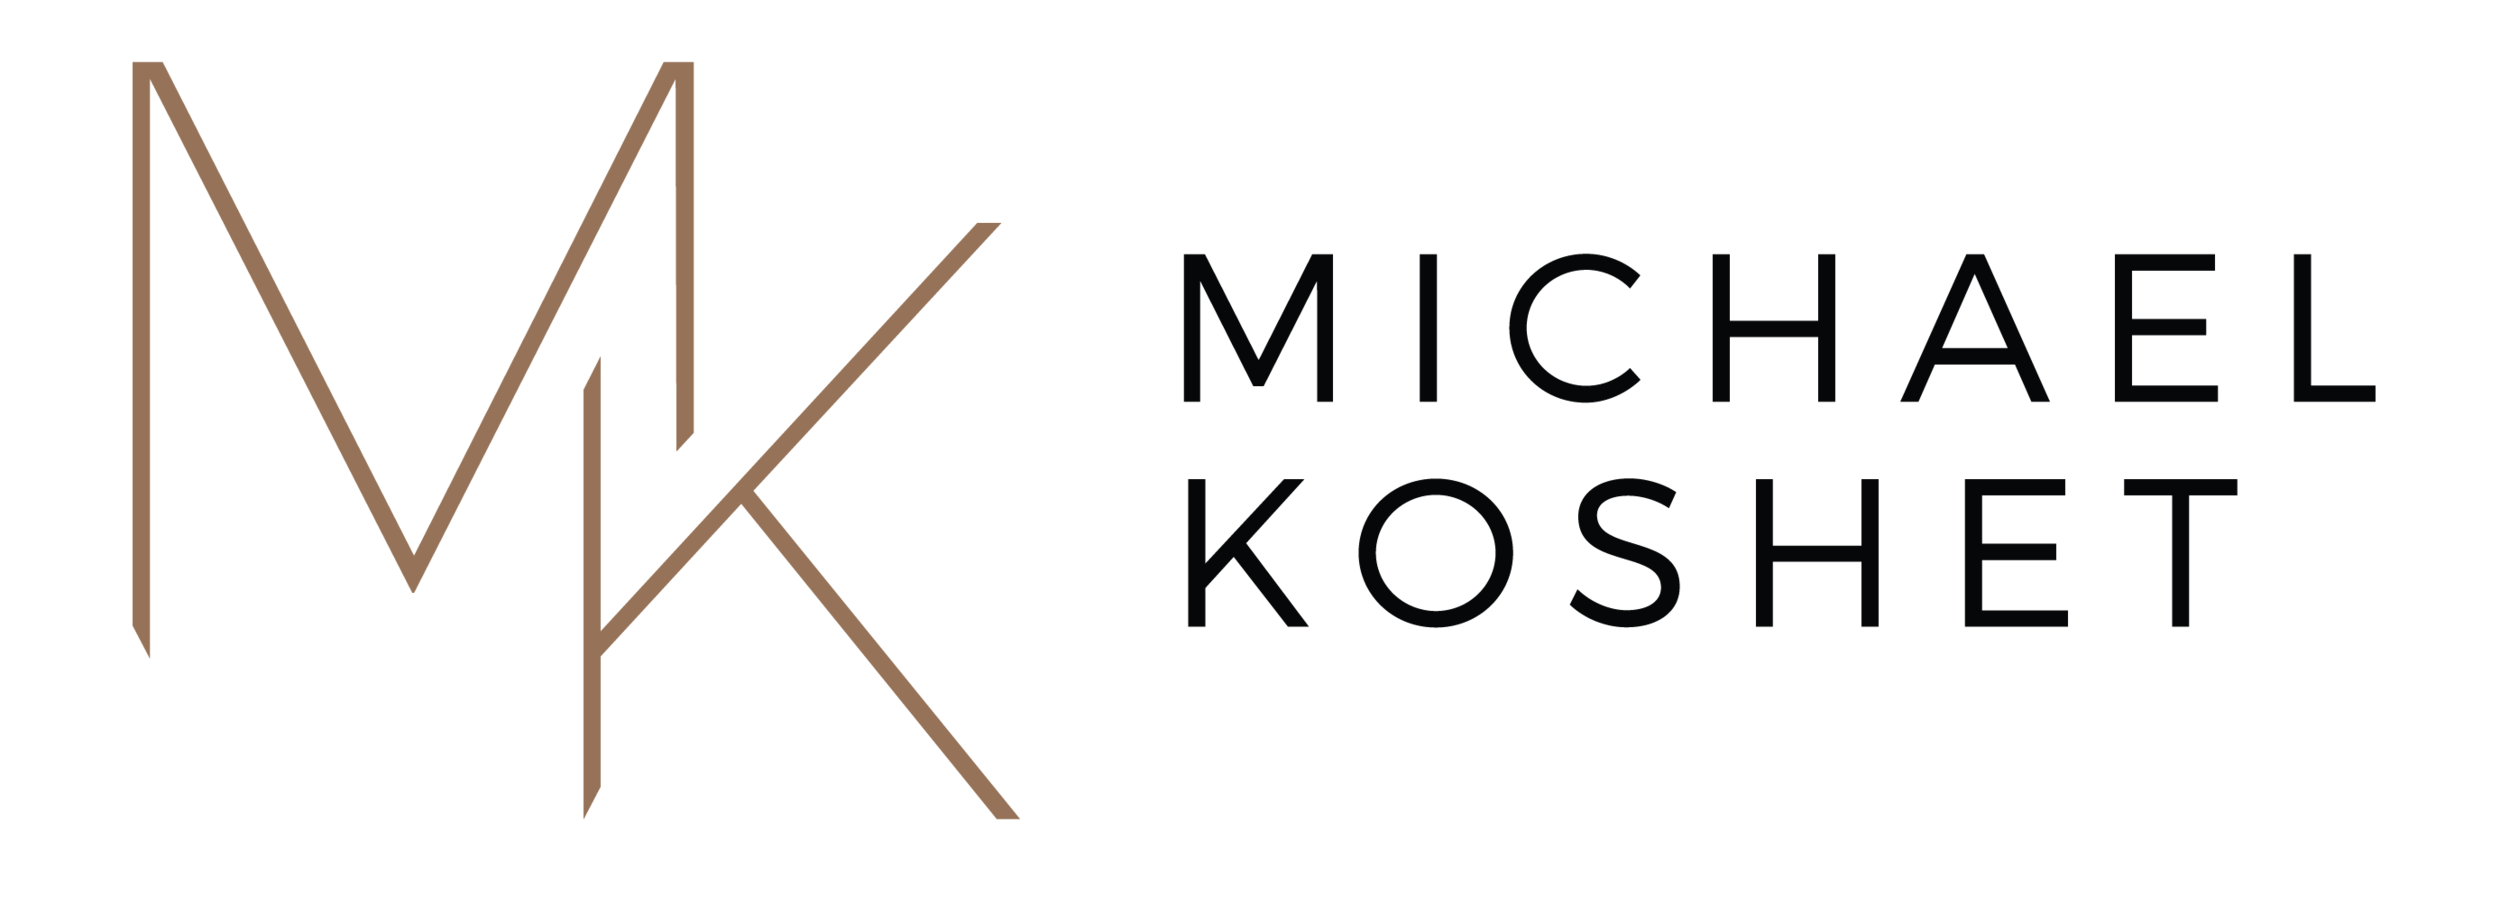 Michael-Koshet-logos-01-03.png